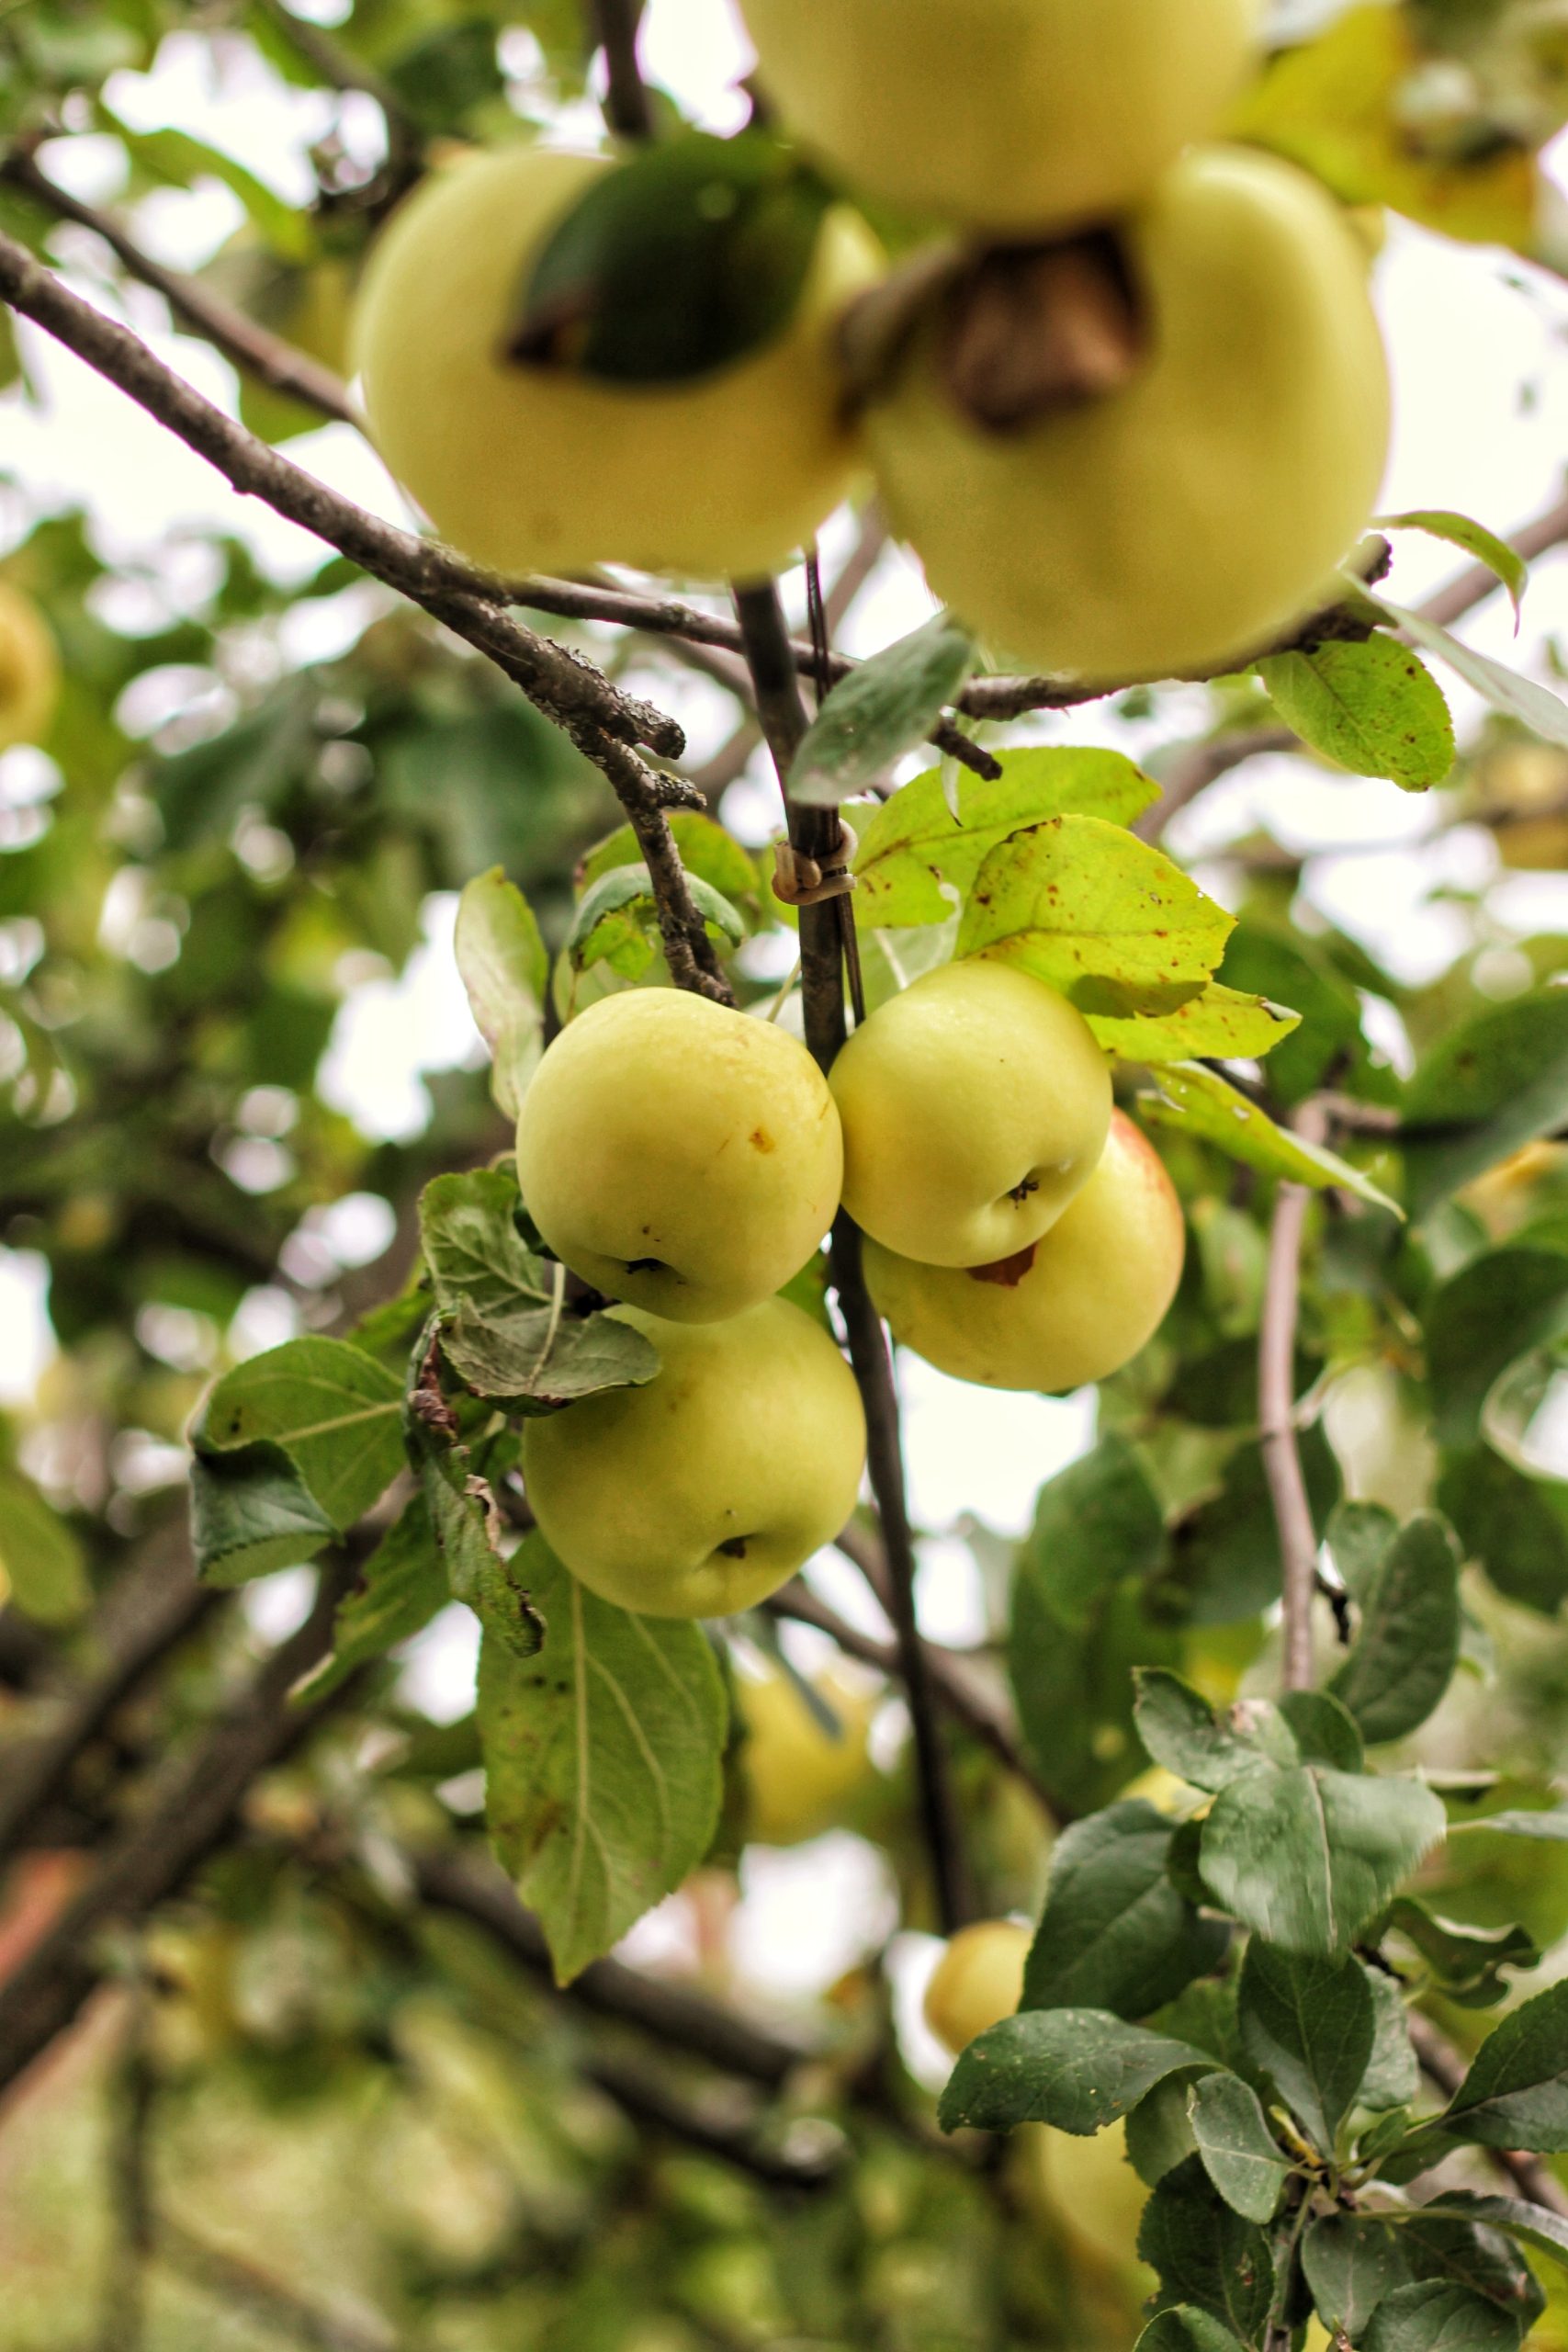 You are currently viewing Pleje af Cox Orange æbletræ – Sådan får du det bedste ud af dit træ